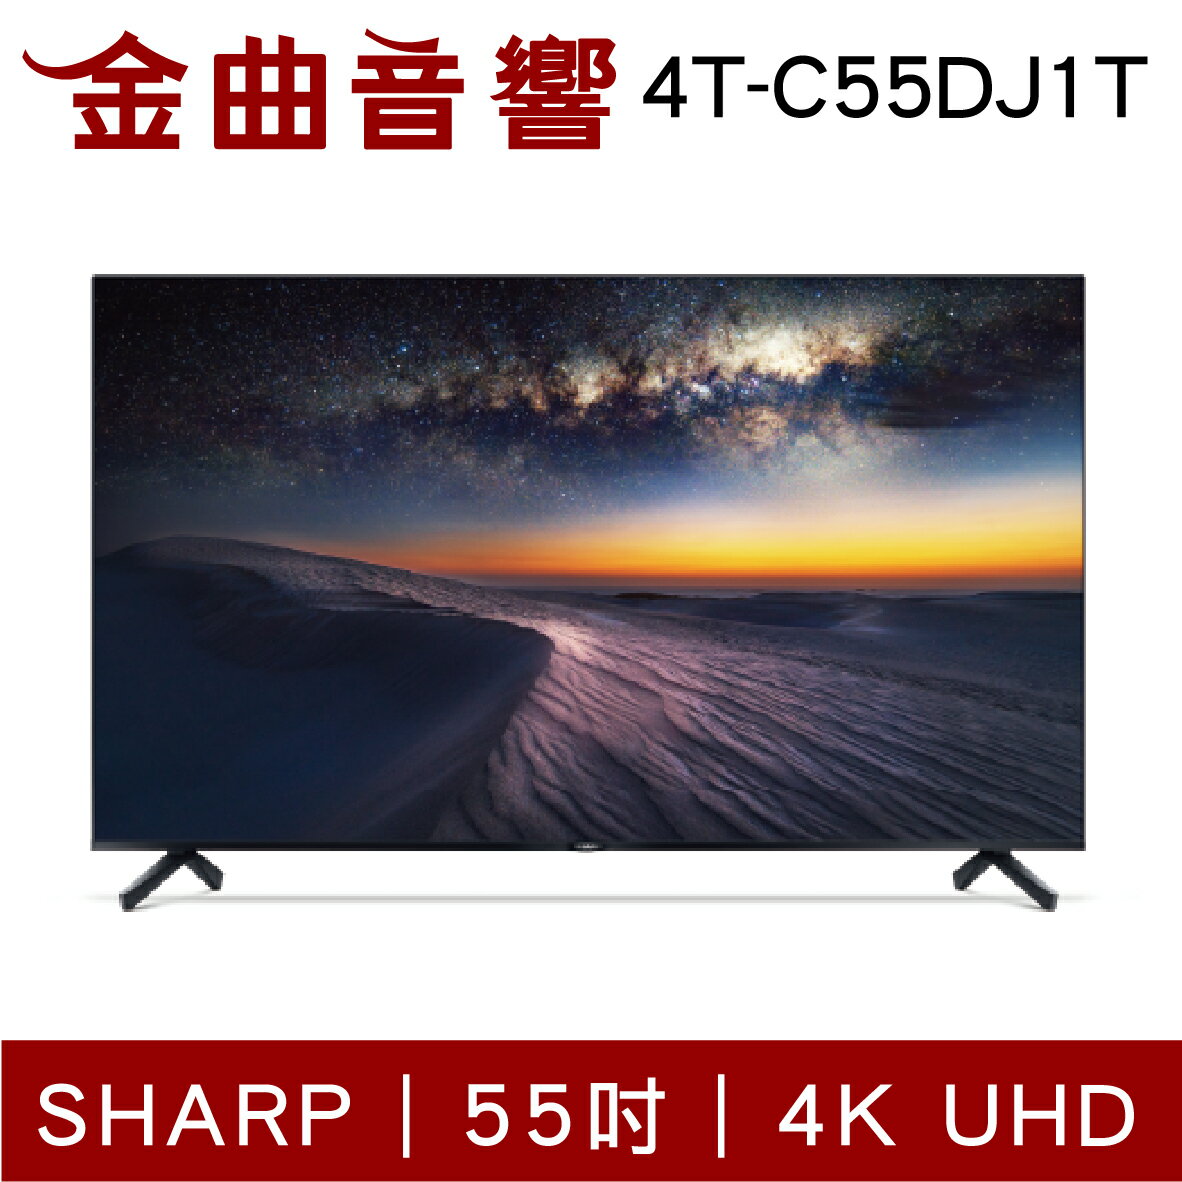 SHARP 夏普 4T-C55DJ1T 55吋 4K UHD Android TV 液晶電視 2022 | 金曲音響